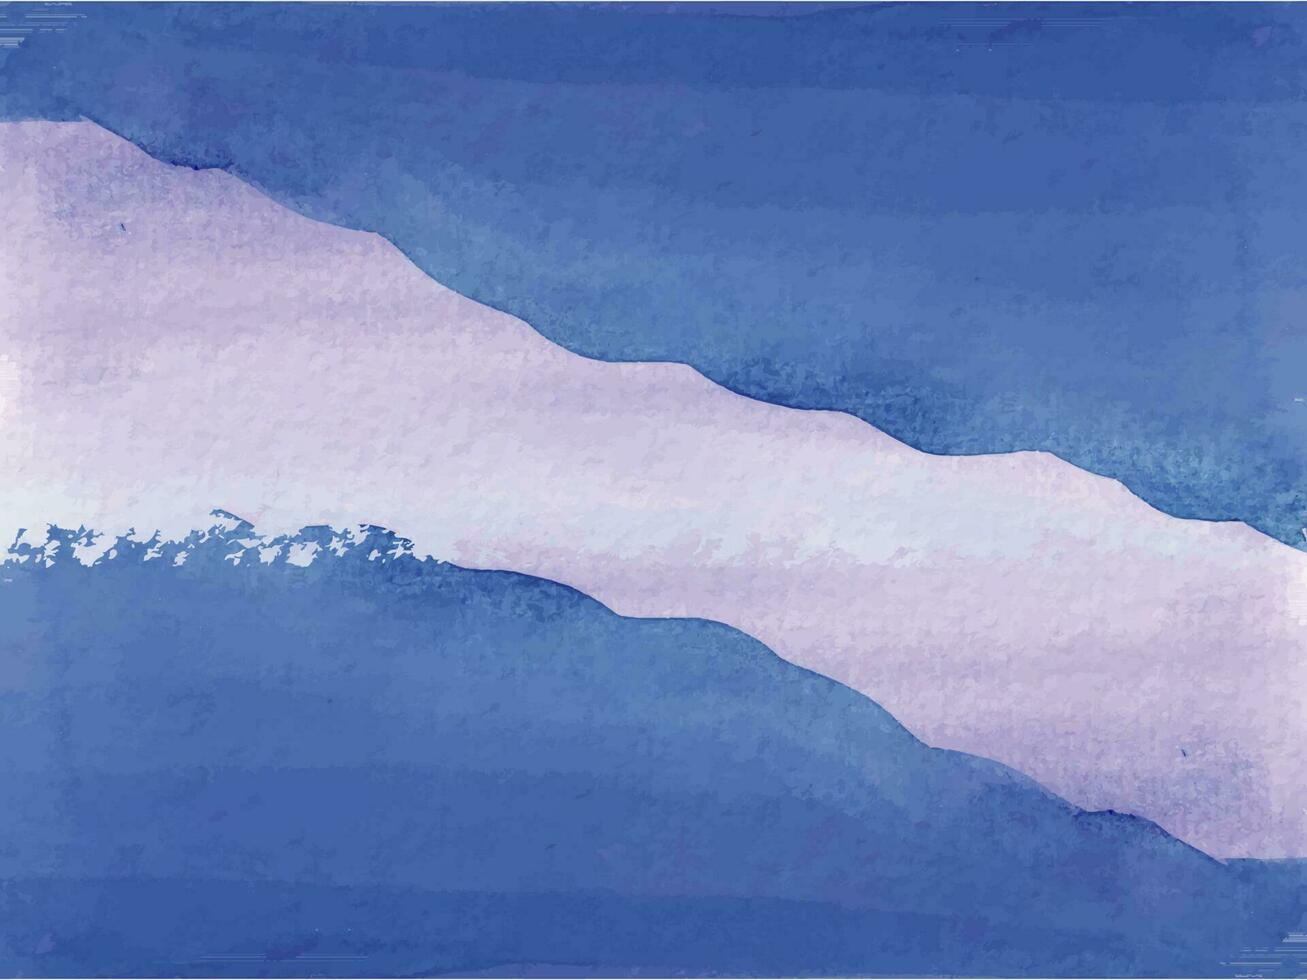 acquerello artistico dipinto invito colorato astratto sfondo. vettore design leggero nuvoloso modello per nozze invito.